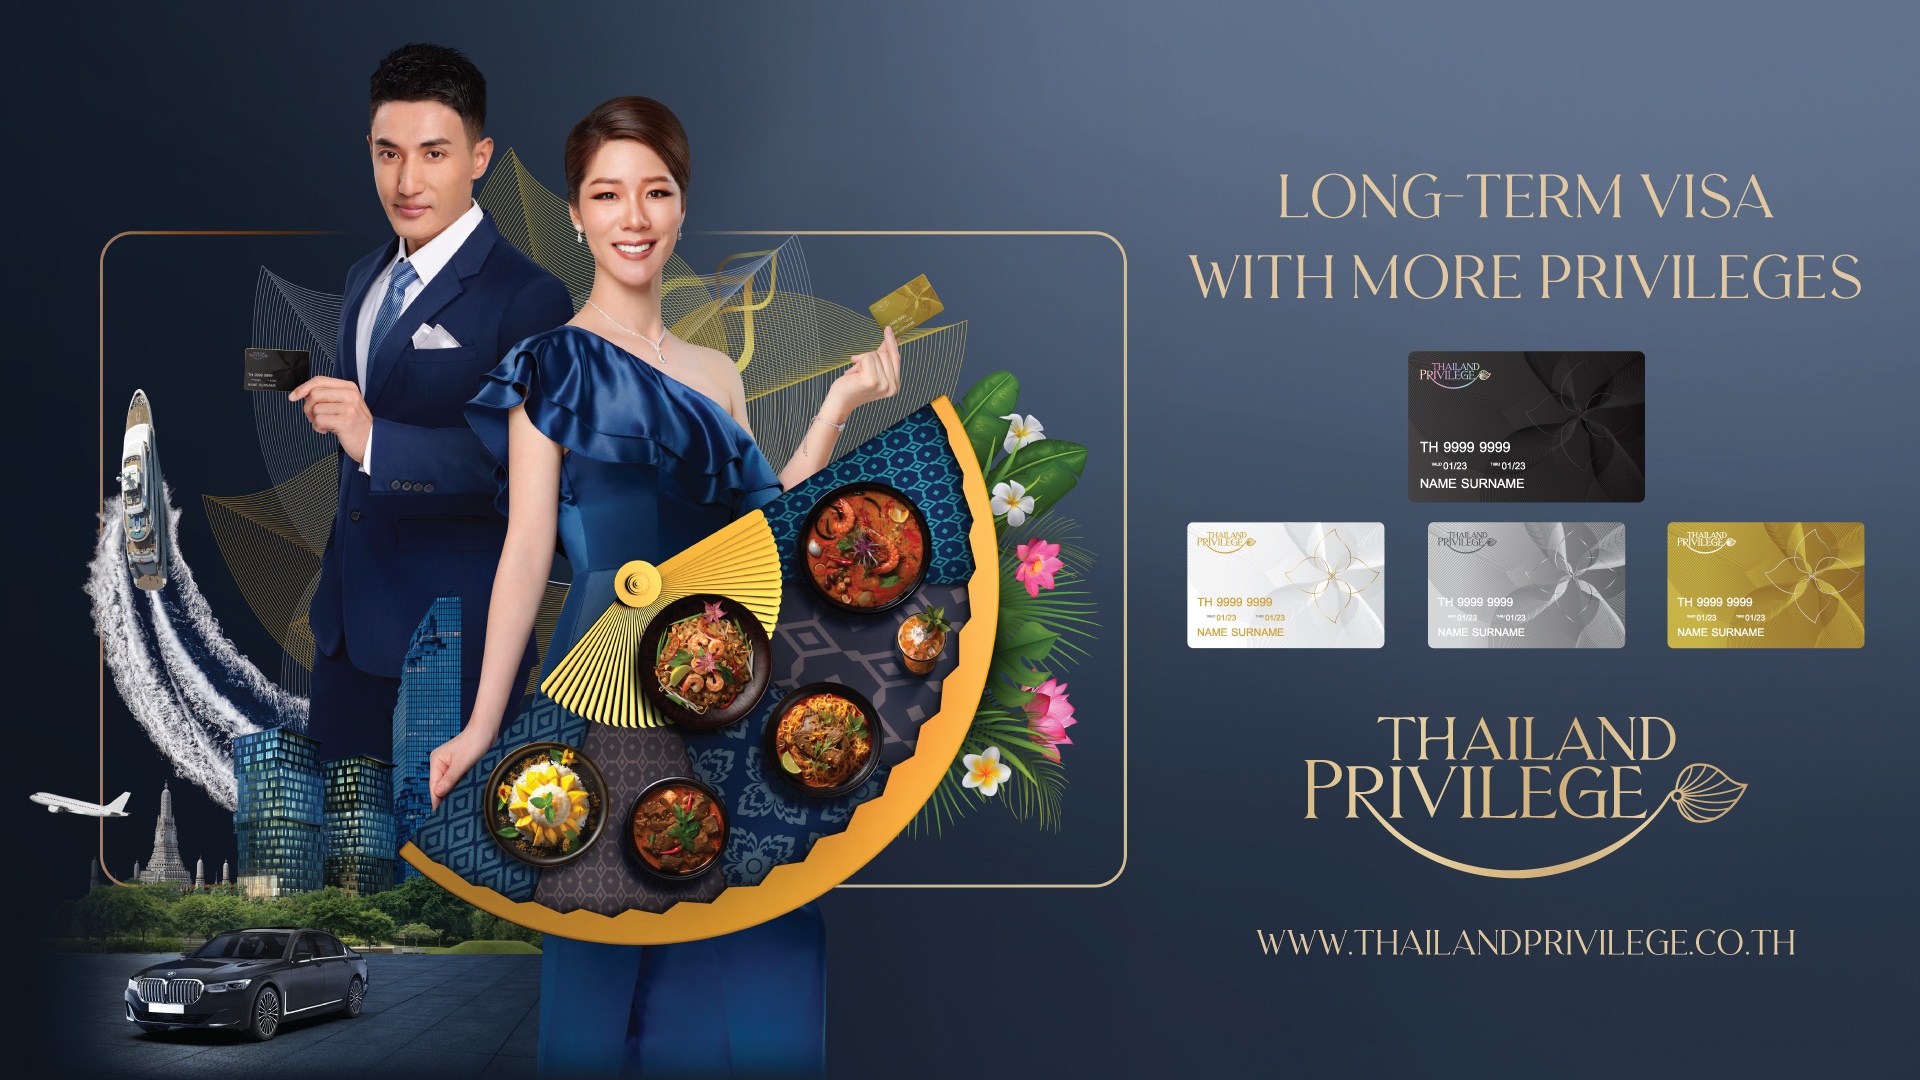 AW_Thailand-Privilege-Card-KV_W1920xH1080px.jpg